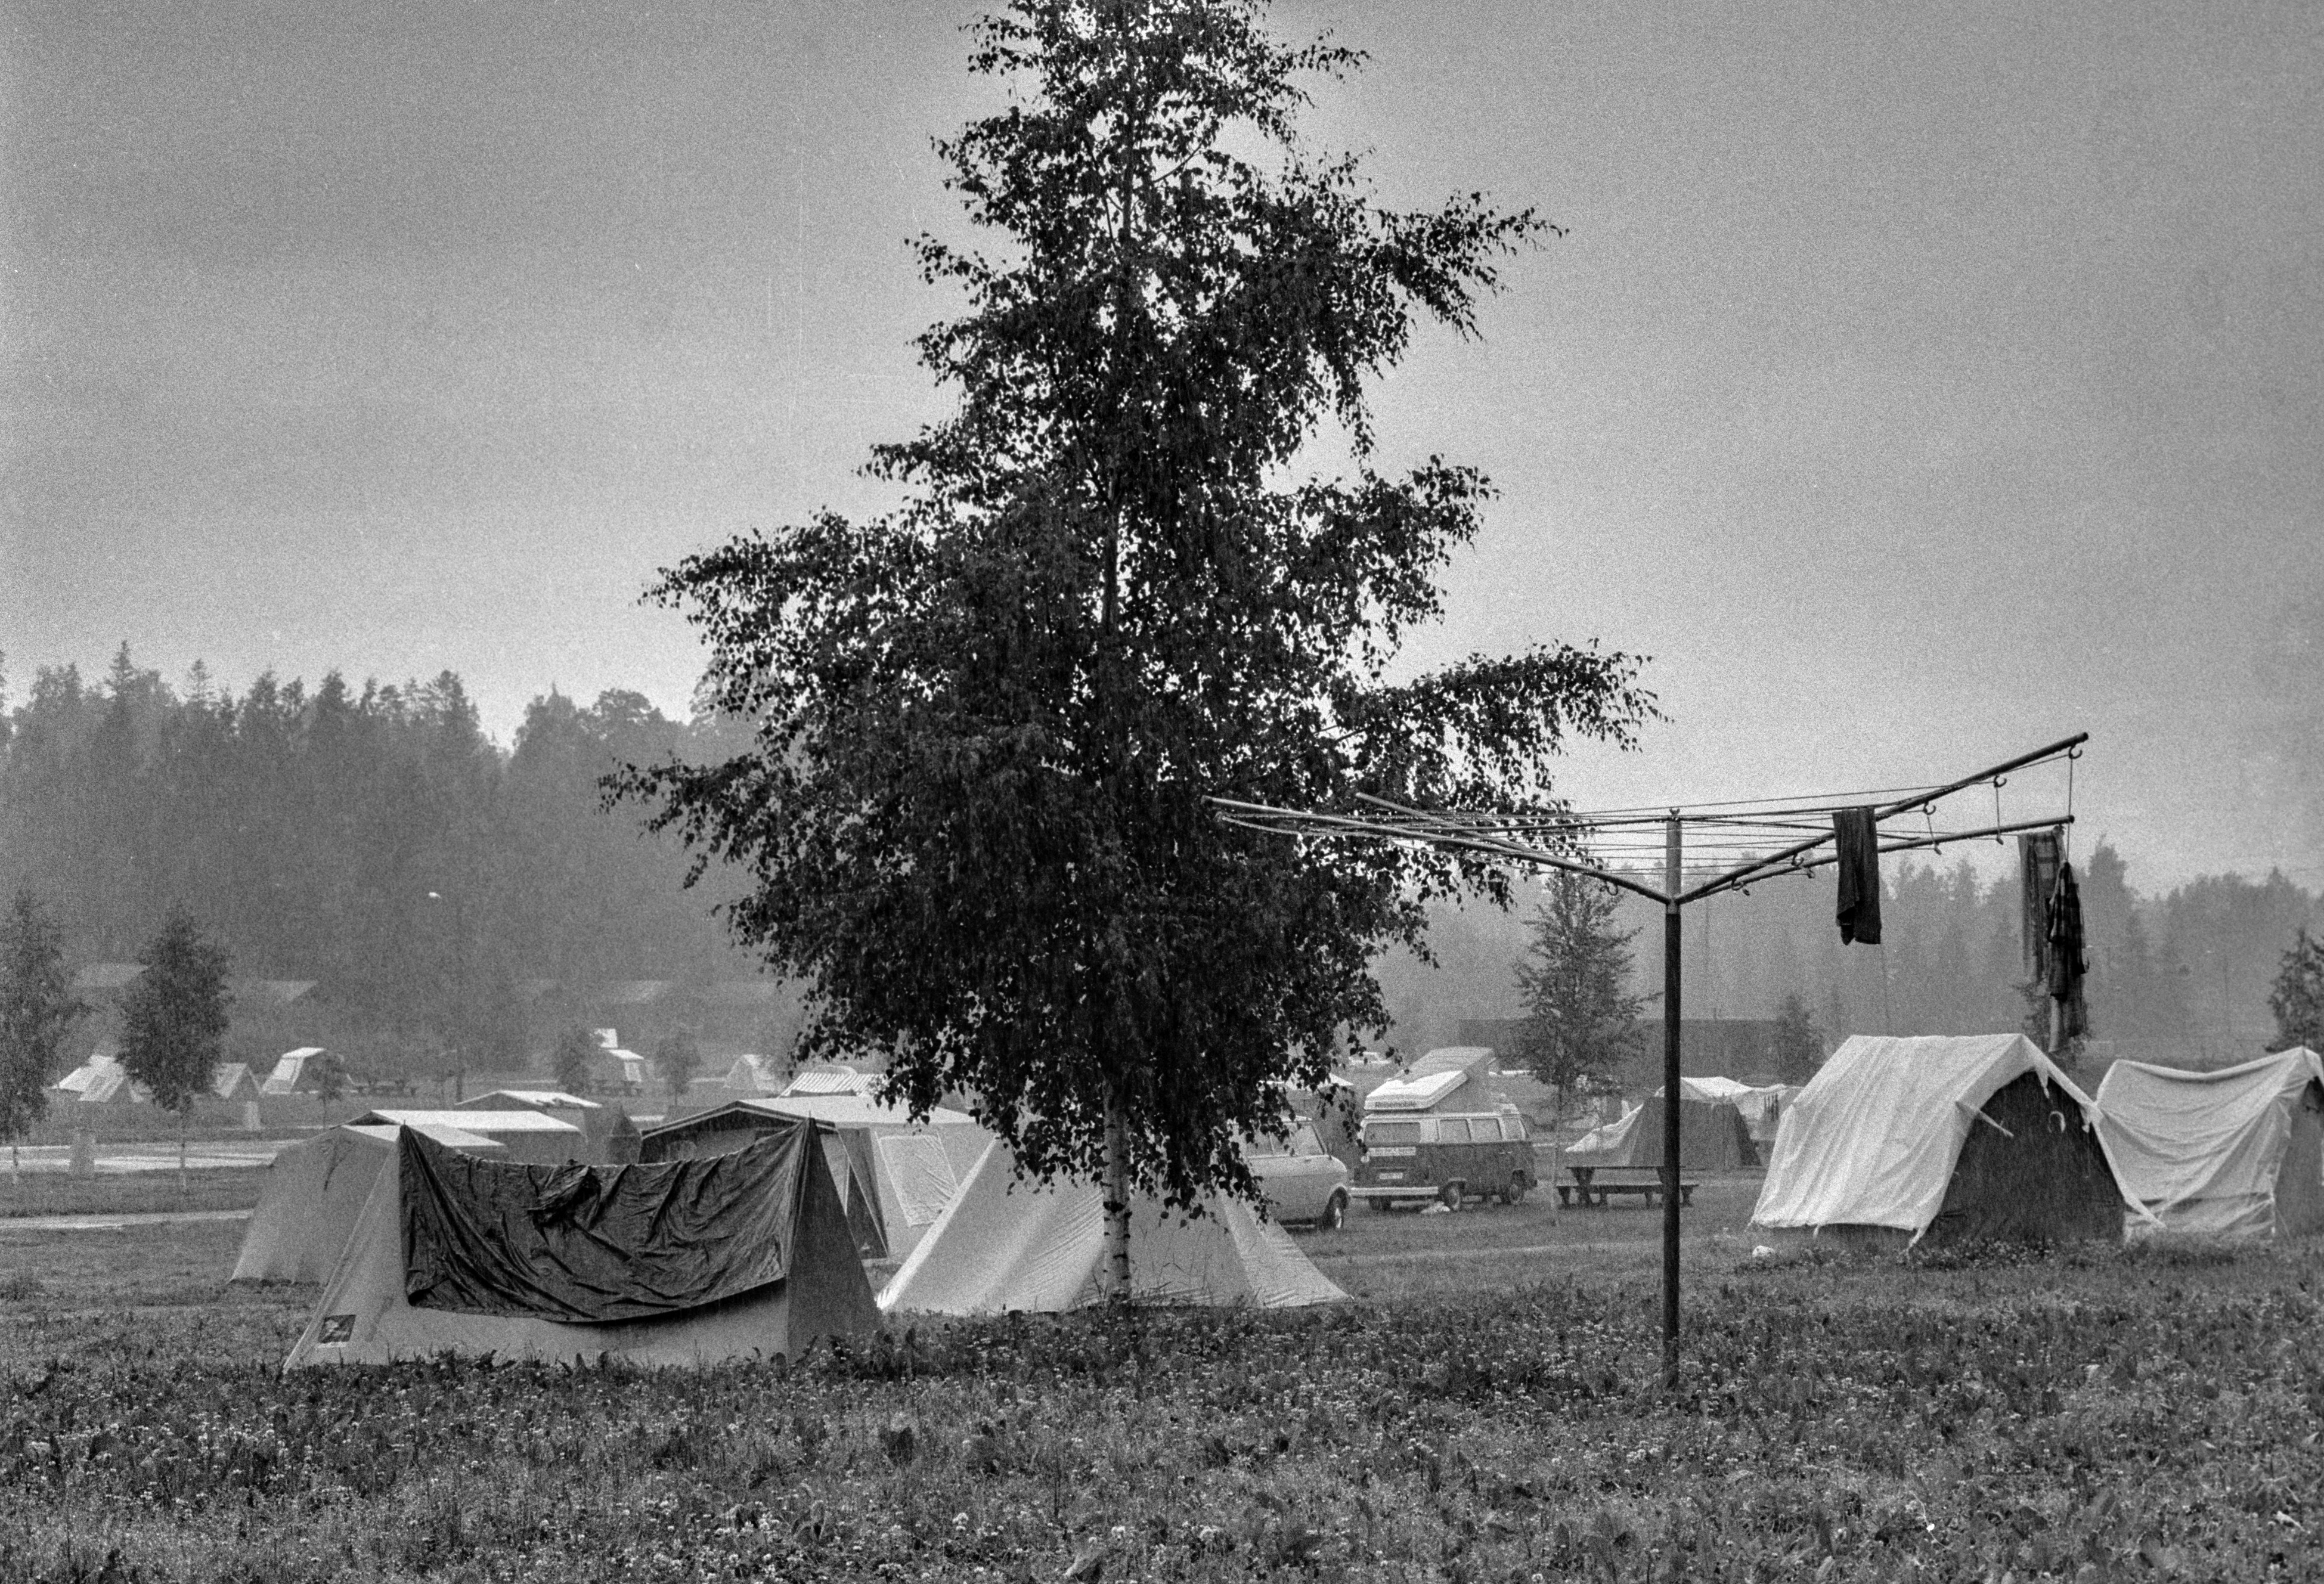 Rastila Camping leirintäalue. Leirintäalueelle on pystytetty telttoja ja pysäköity autoja. Edessä oikealla pyykinkuivausteline, johon on ripustettu kuivumaan pyykkejä.